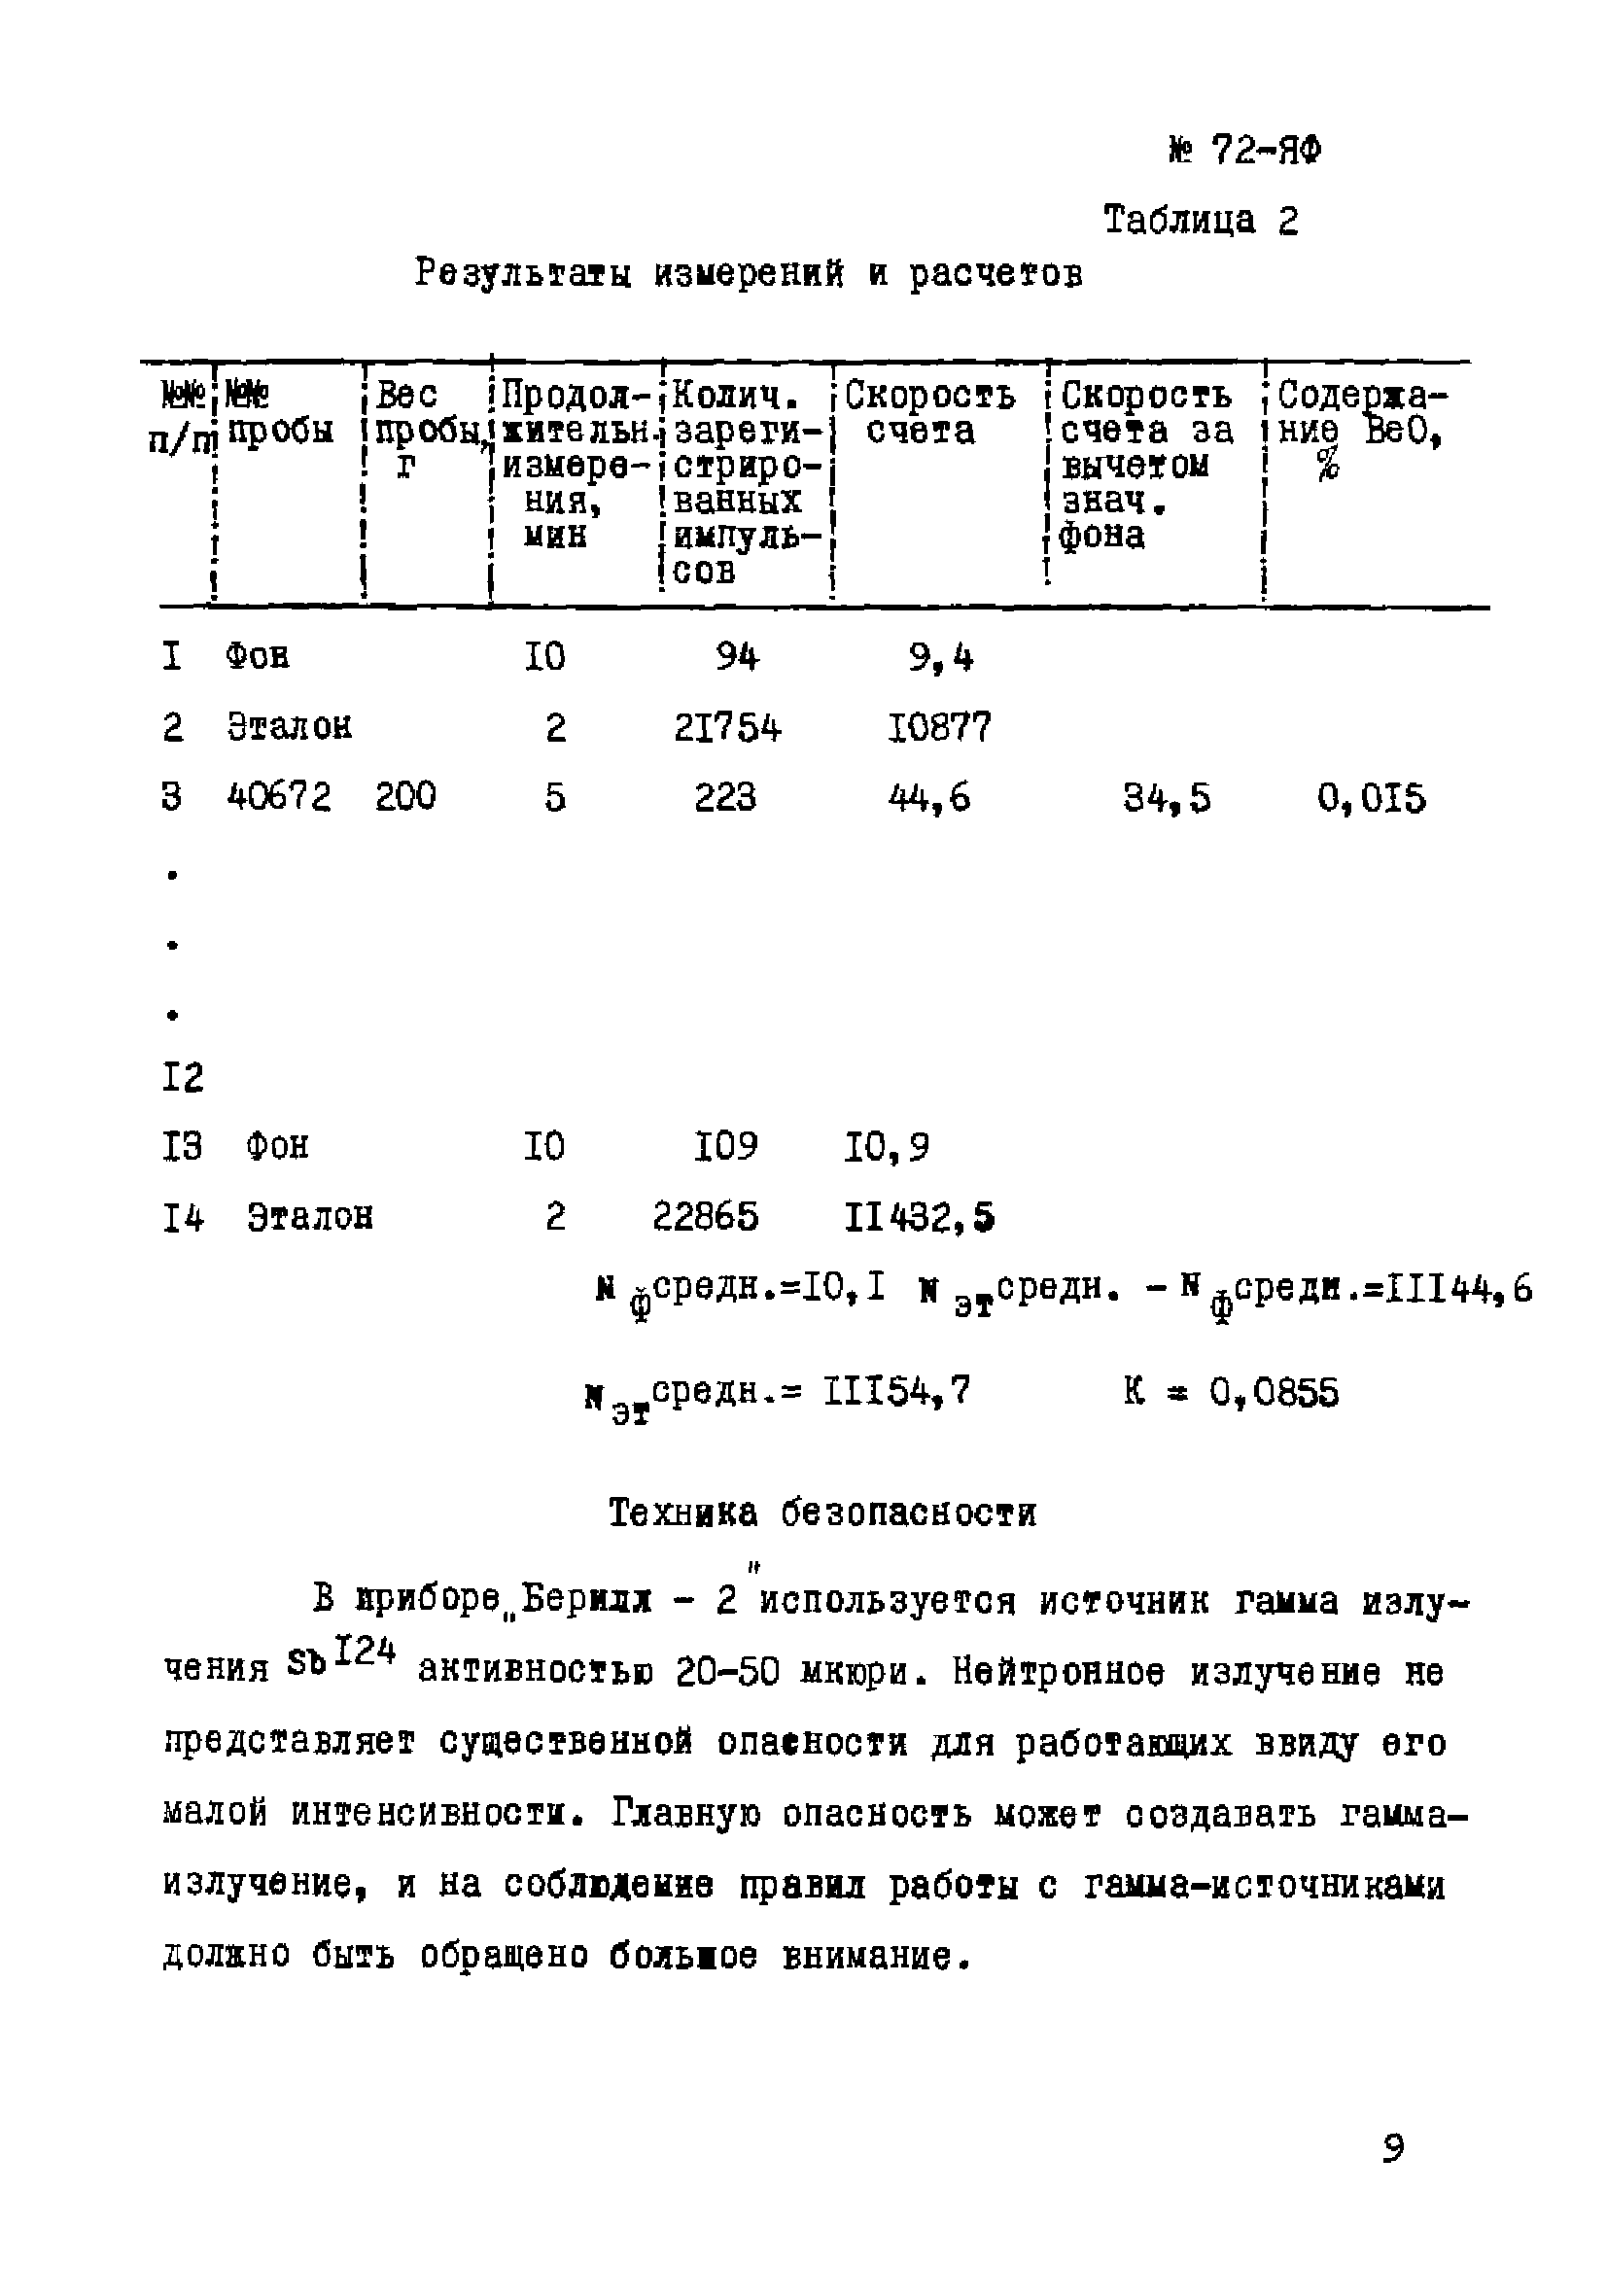 Инструкция НСАМ 72-ЯФ